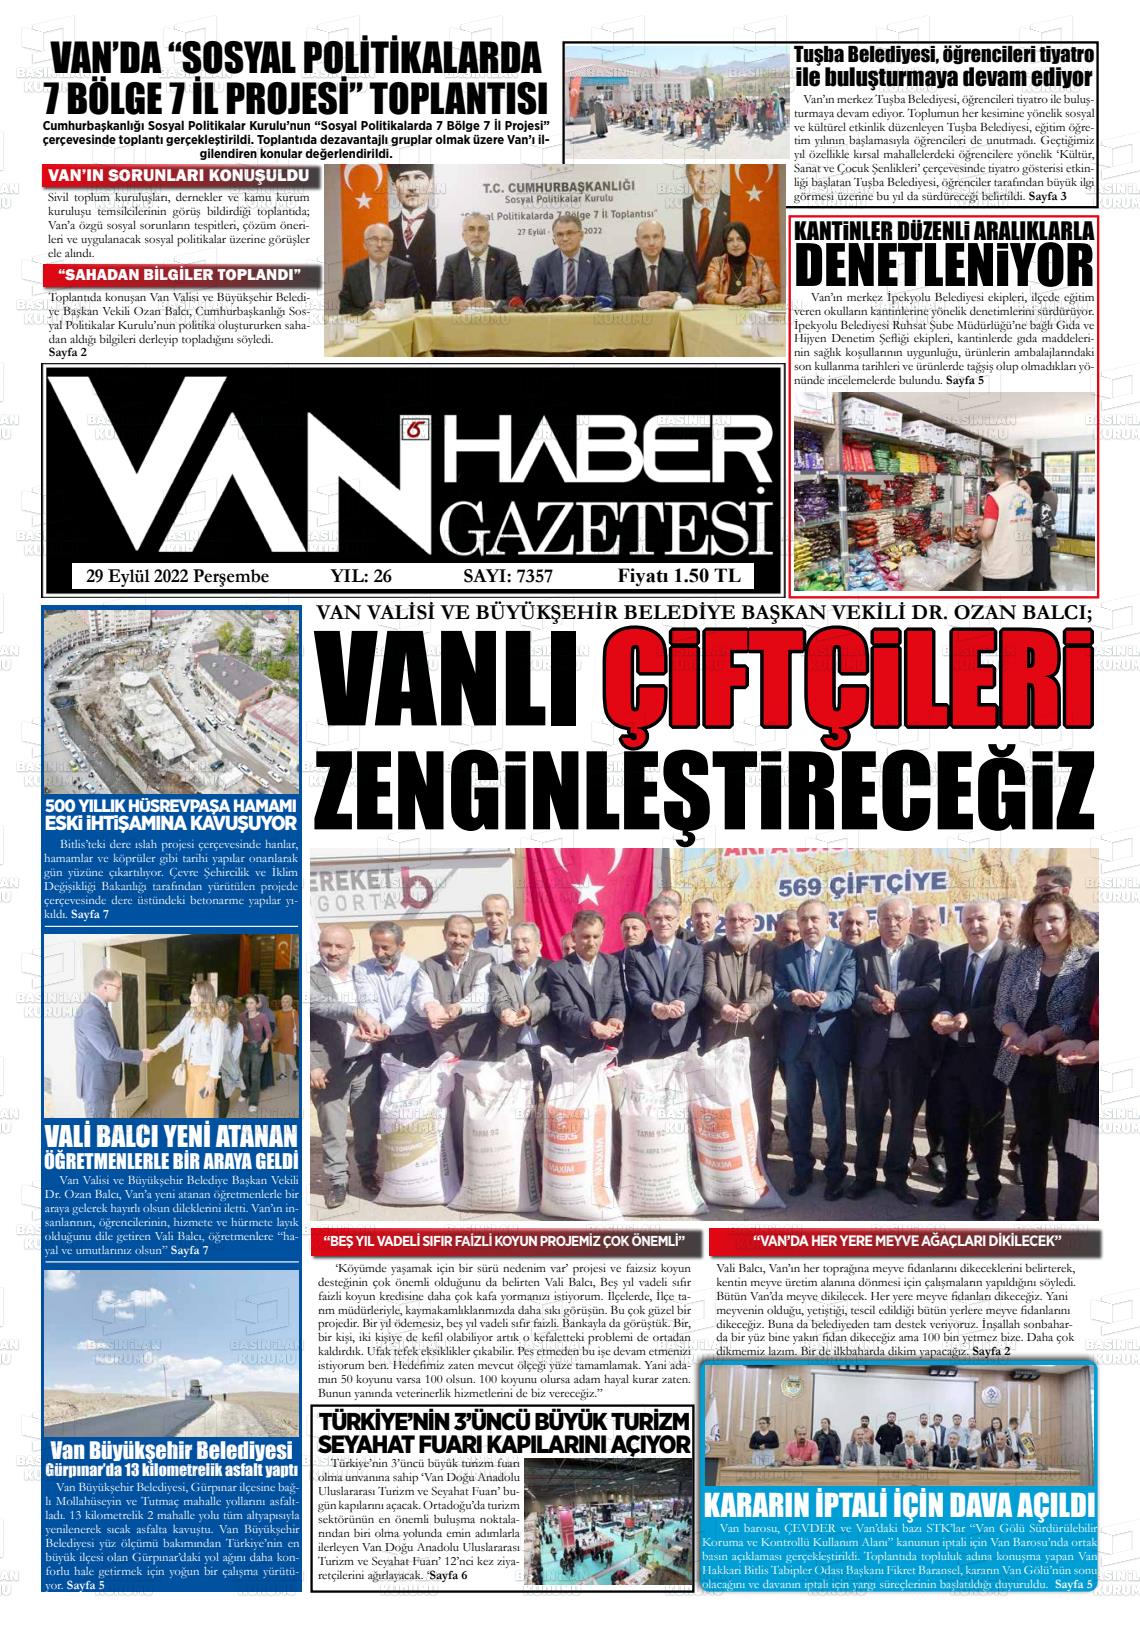 29 Eylül 2022 Van Prestij Gazete Manşeti